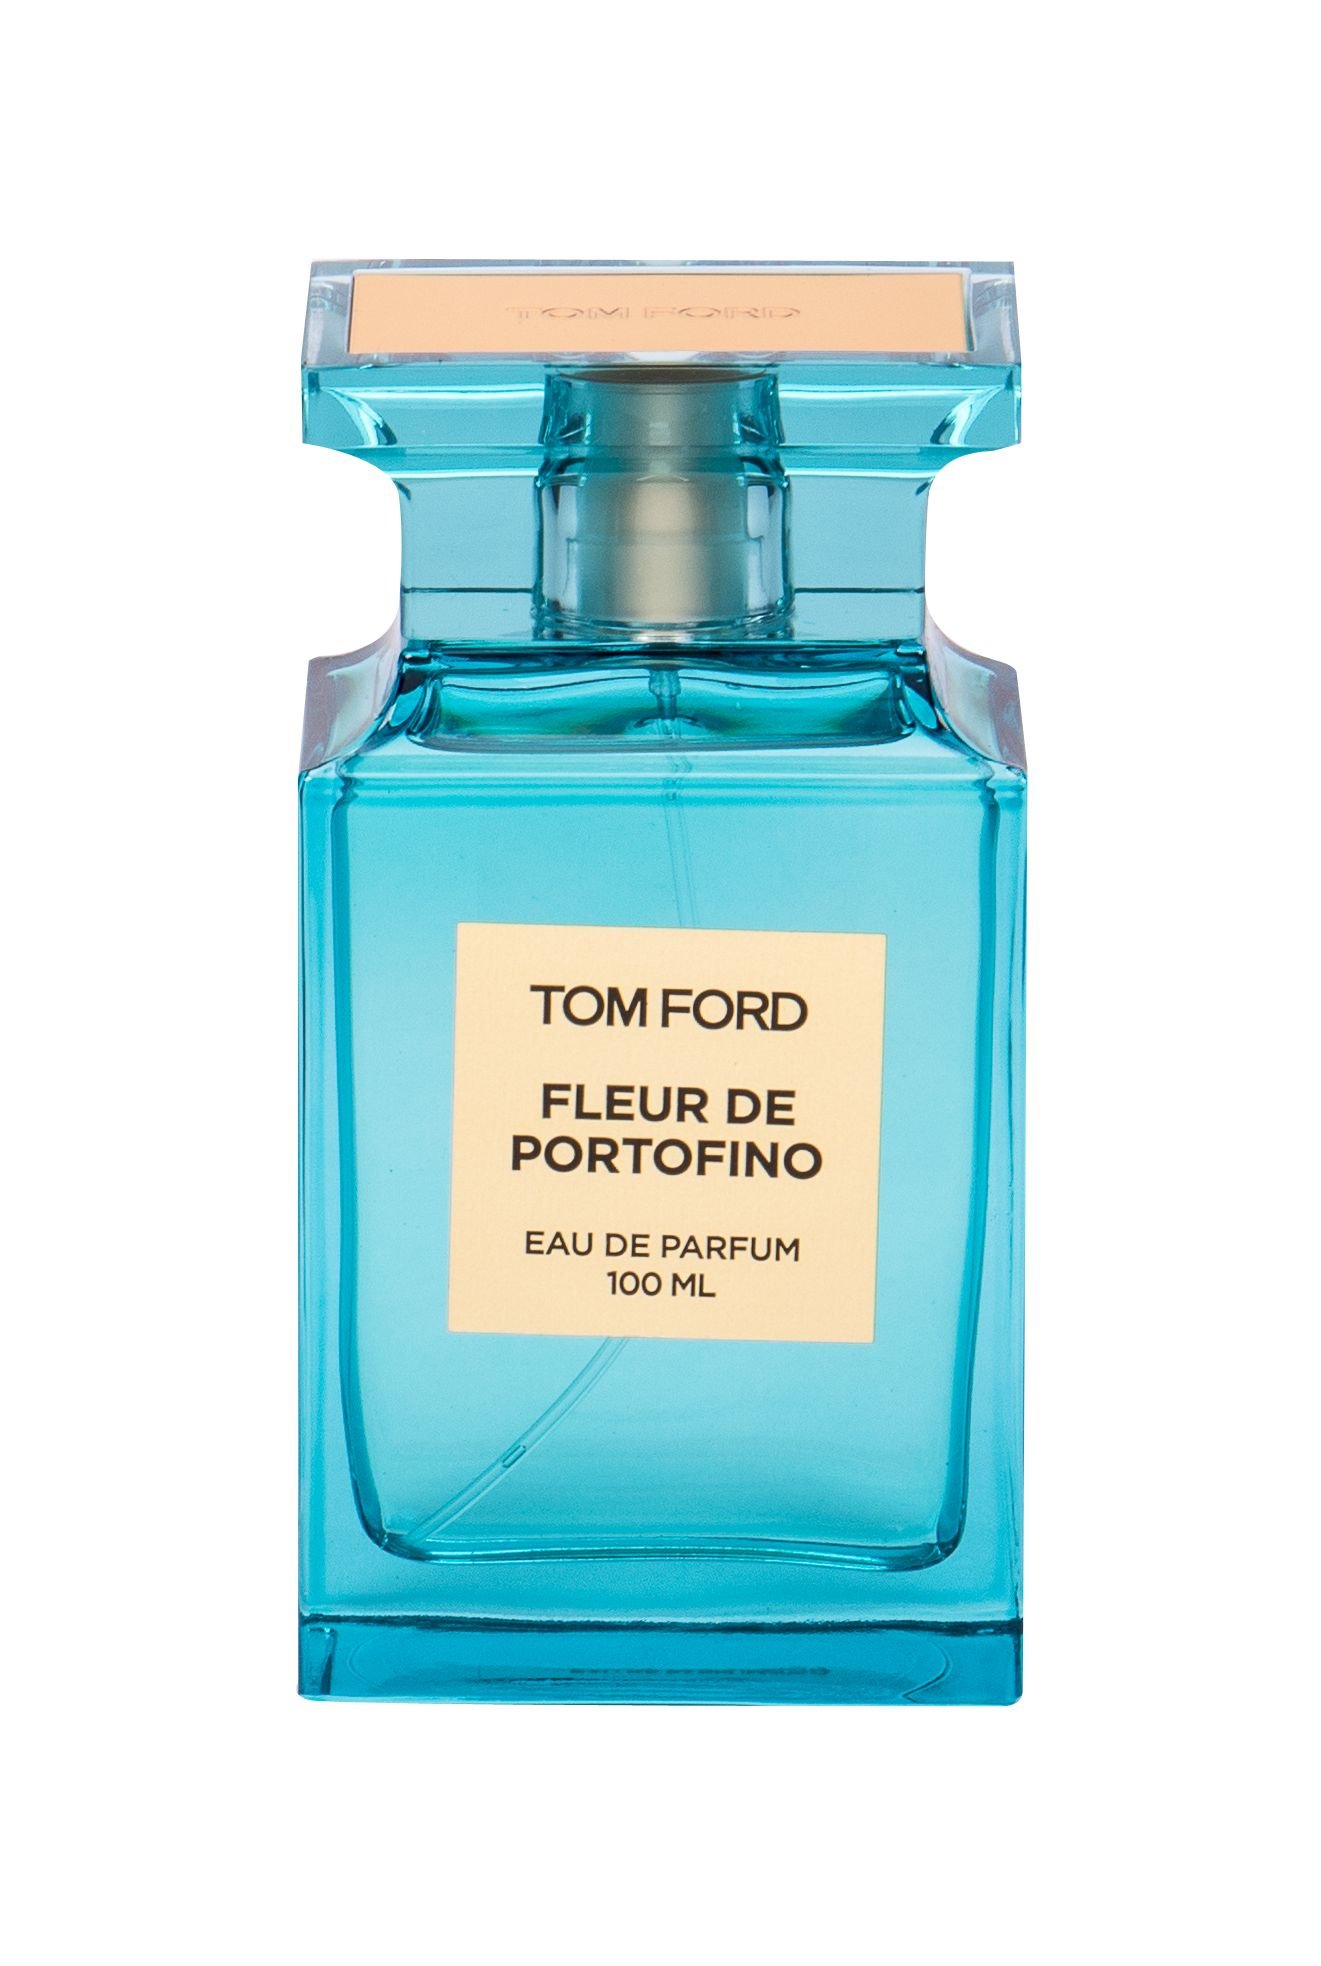 Tom Ford Fleur de Portofino 100ml NIŠINIAI Kvepalai Unisex EDP